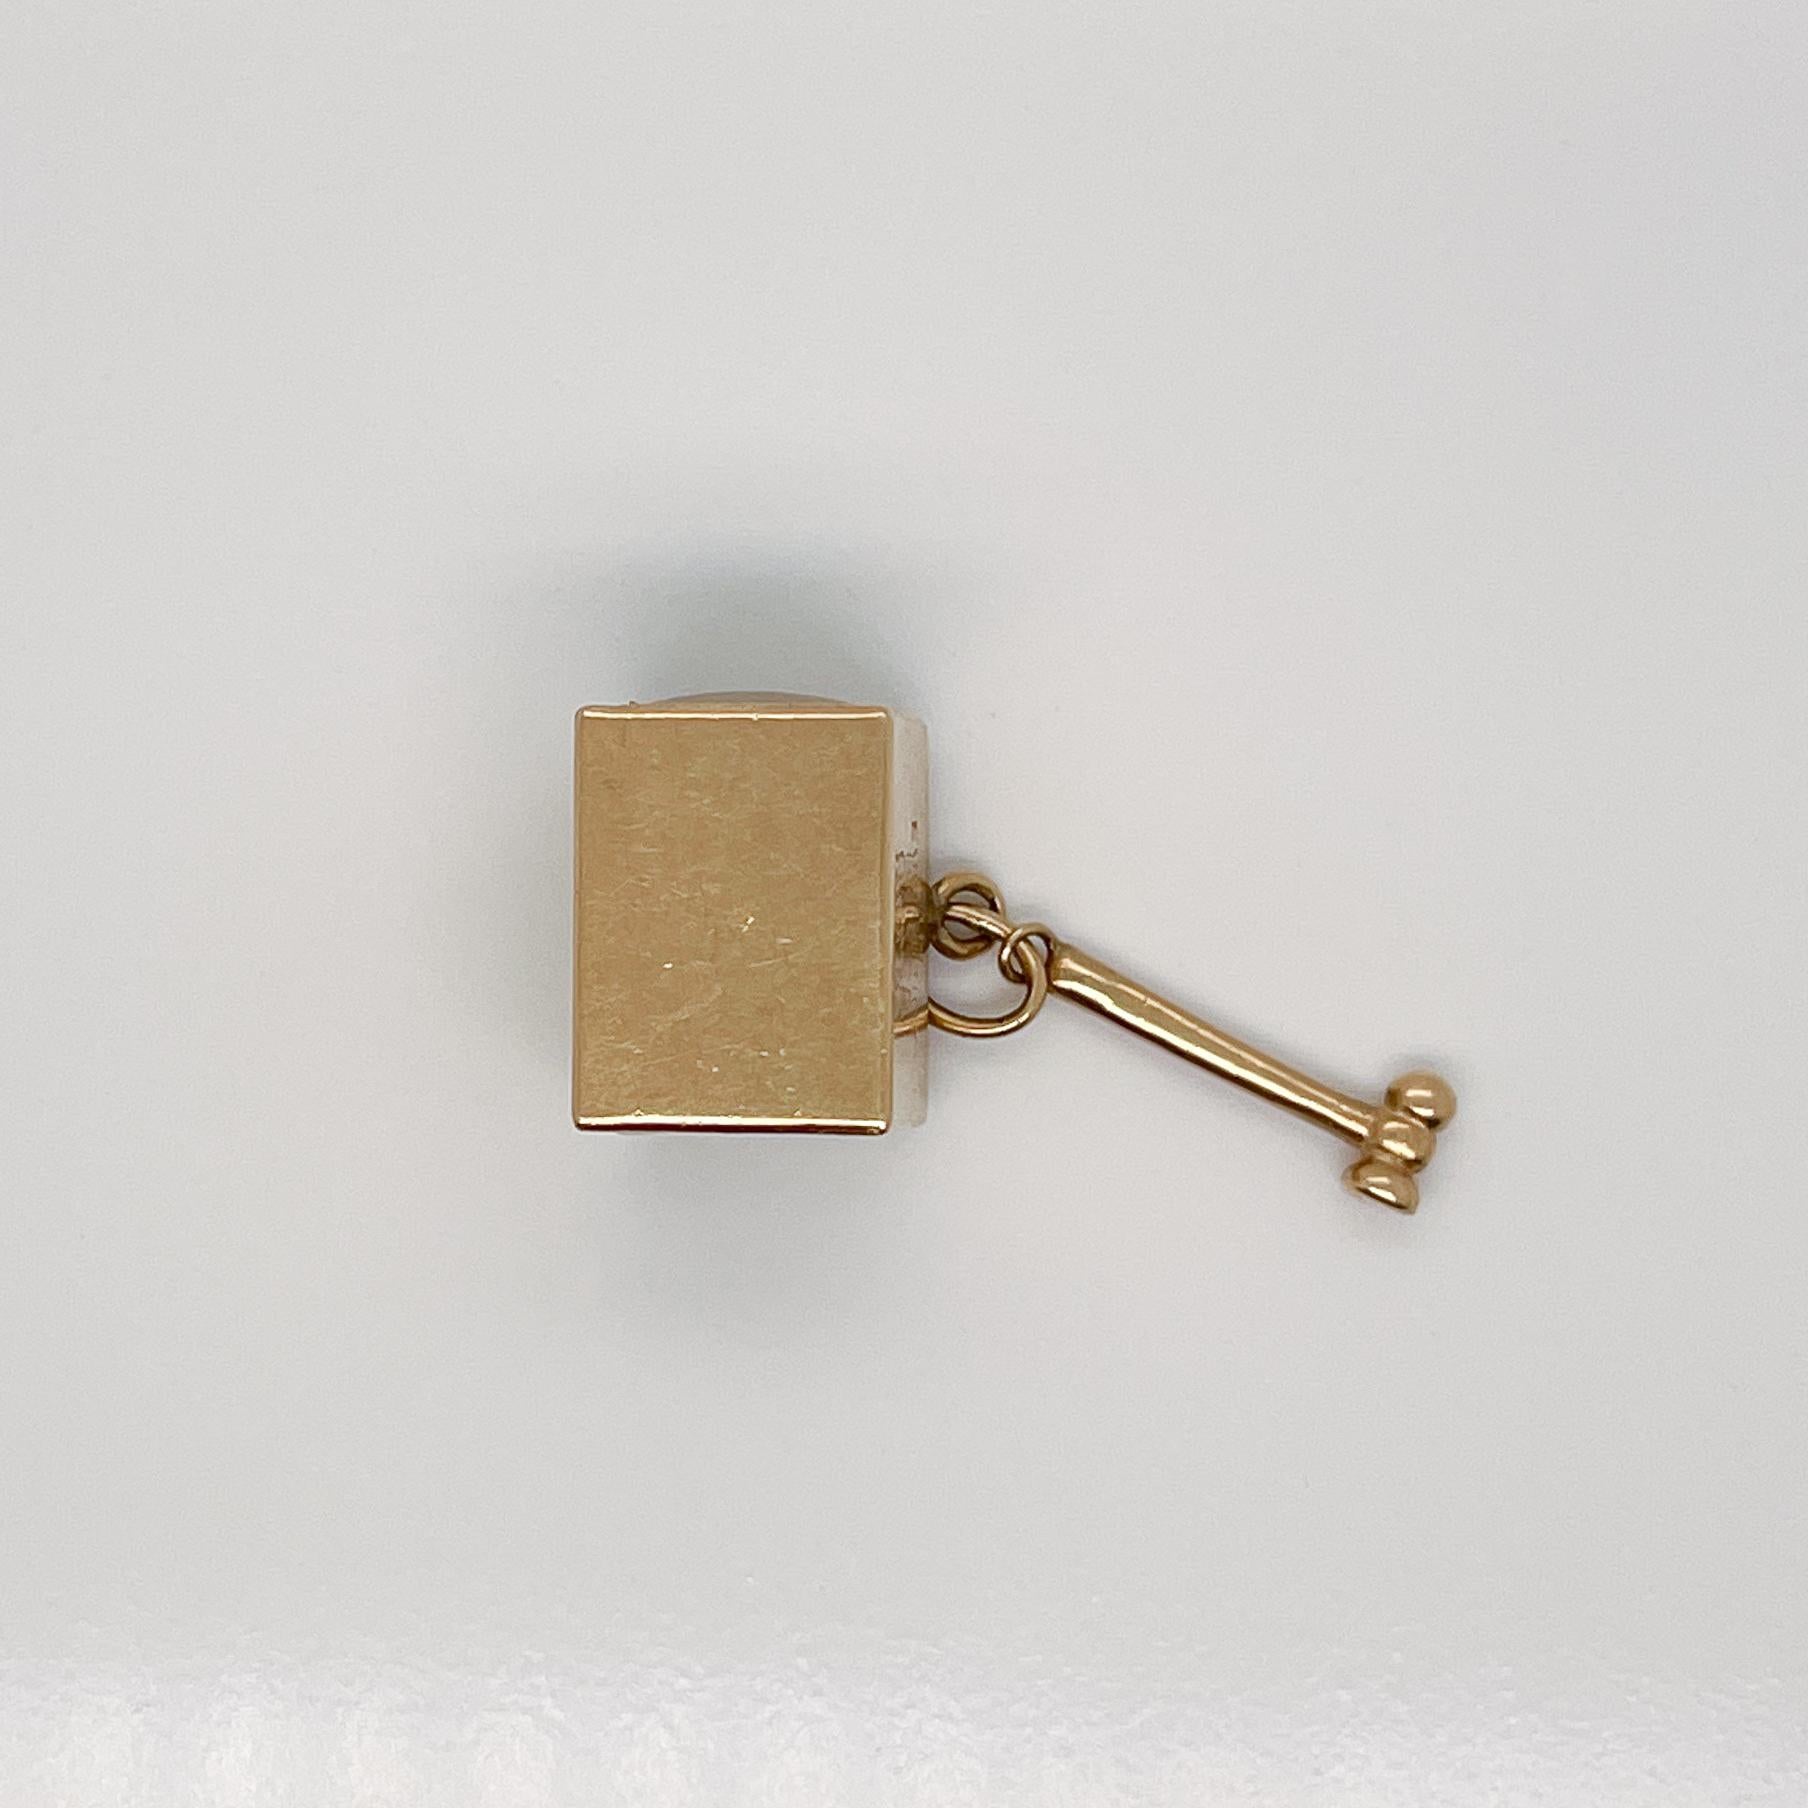 Vintage Signed 14K Gold $1 Emergency Box & Hammer Charm for a Bracelet 4